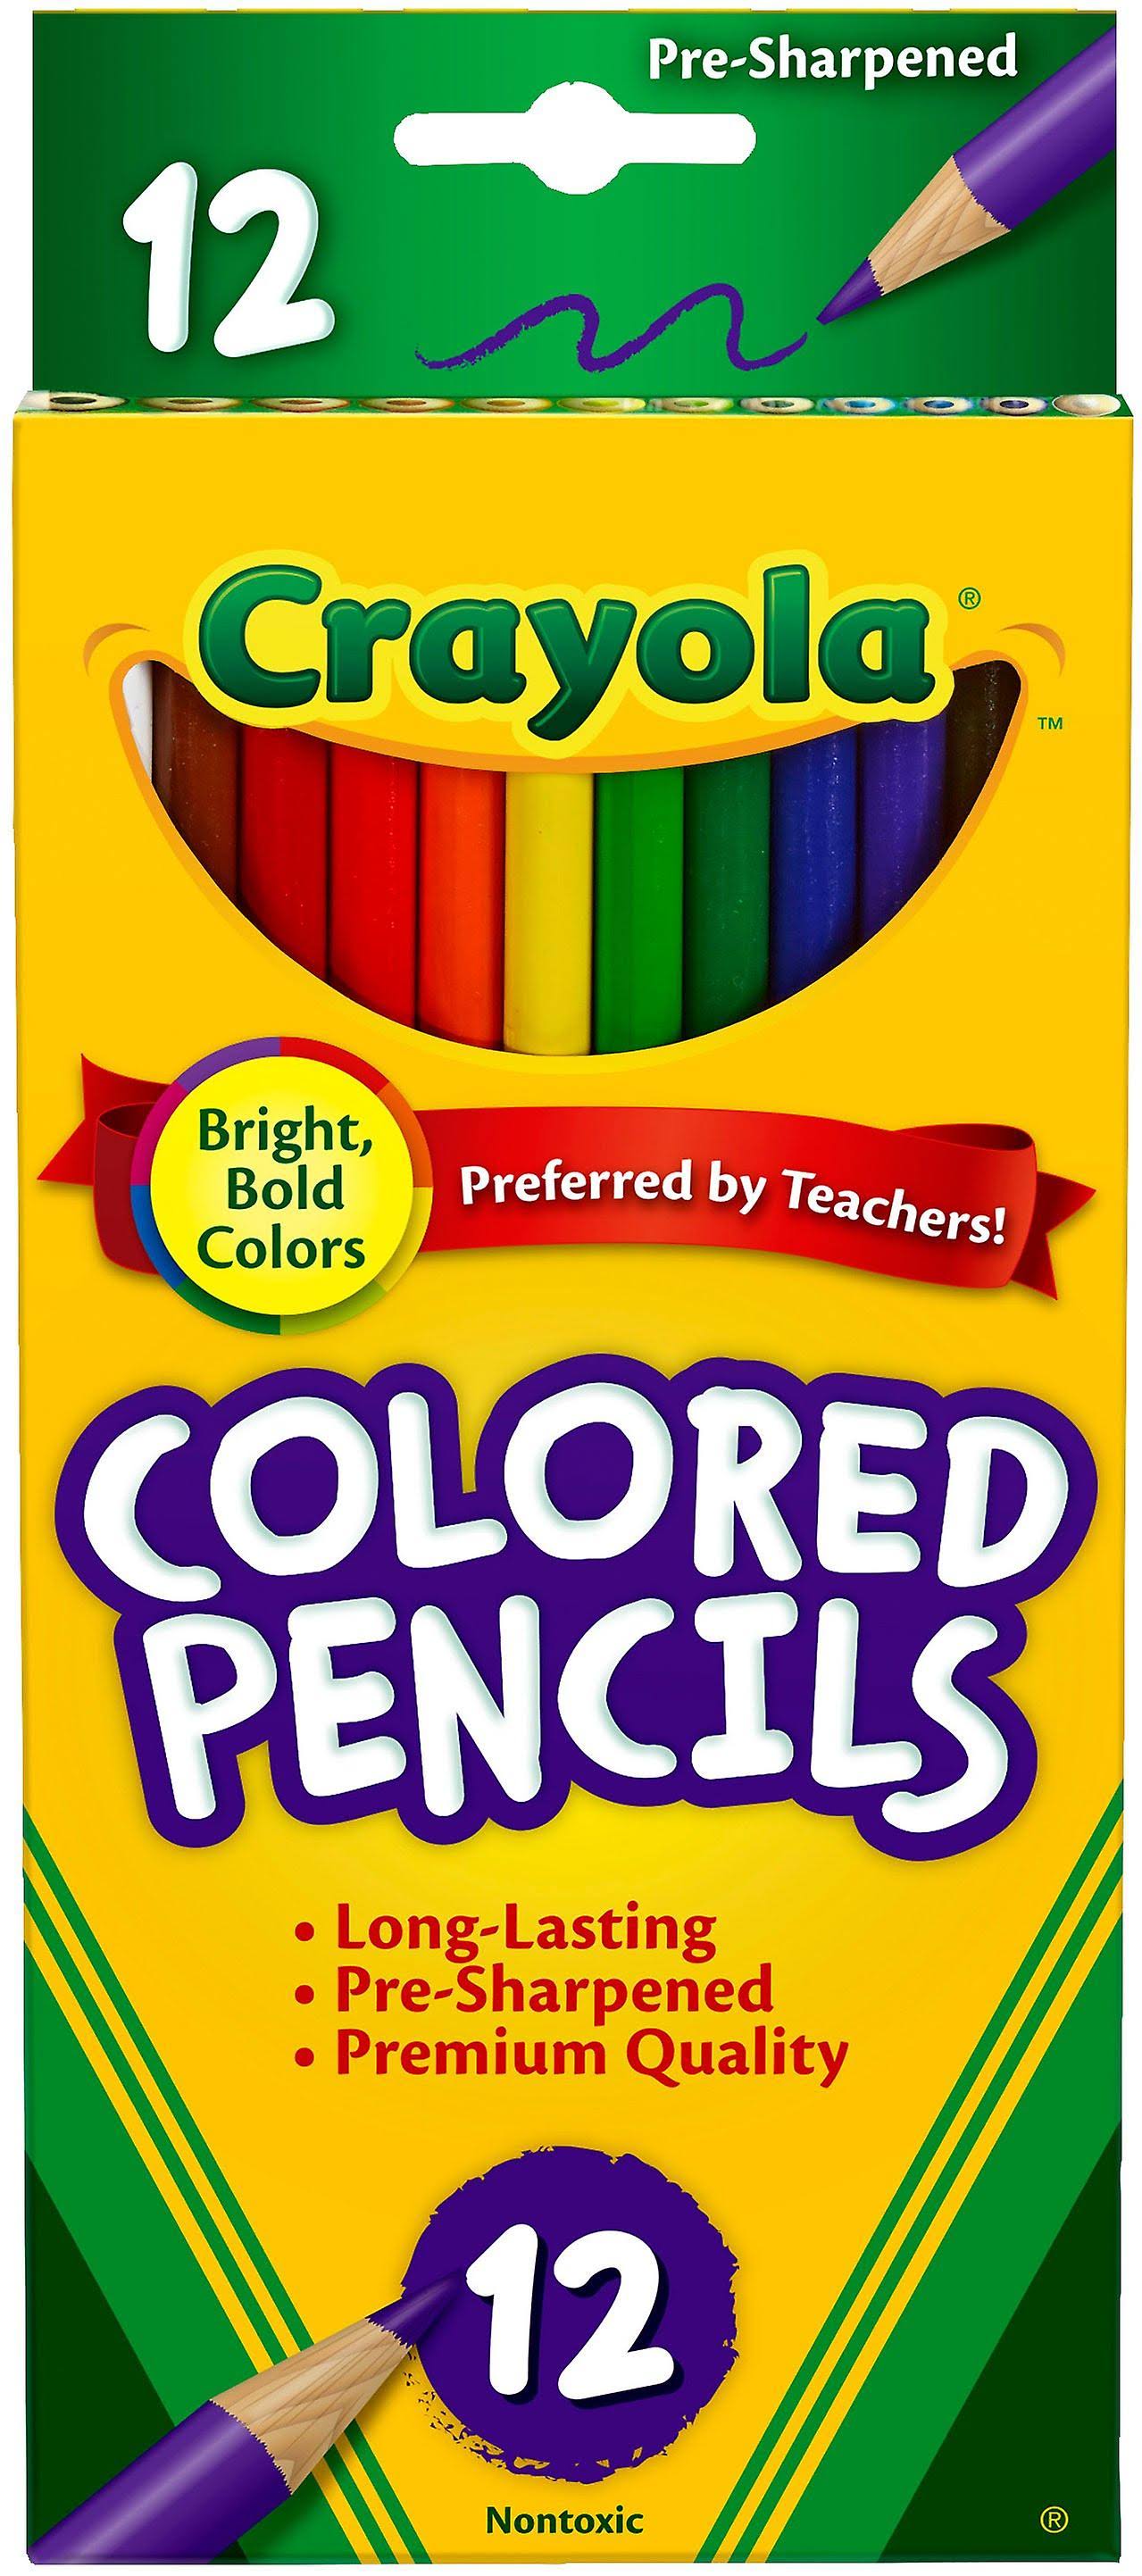 Crayola Colored Pencils - 12 Pencils